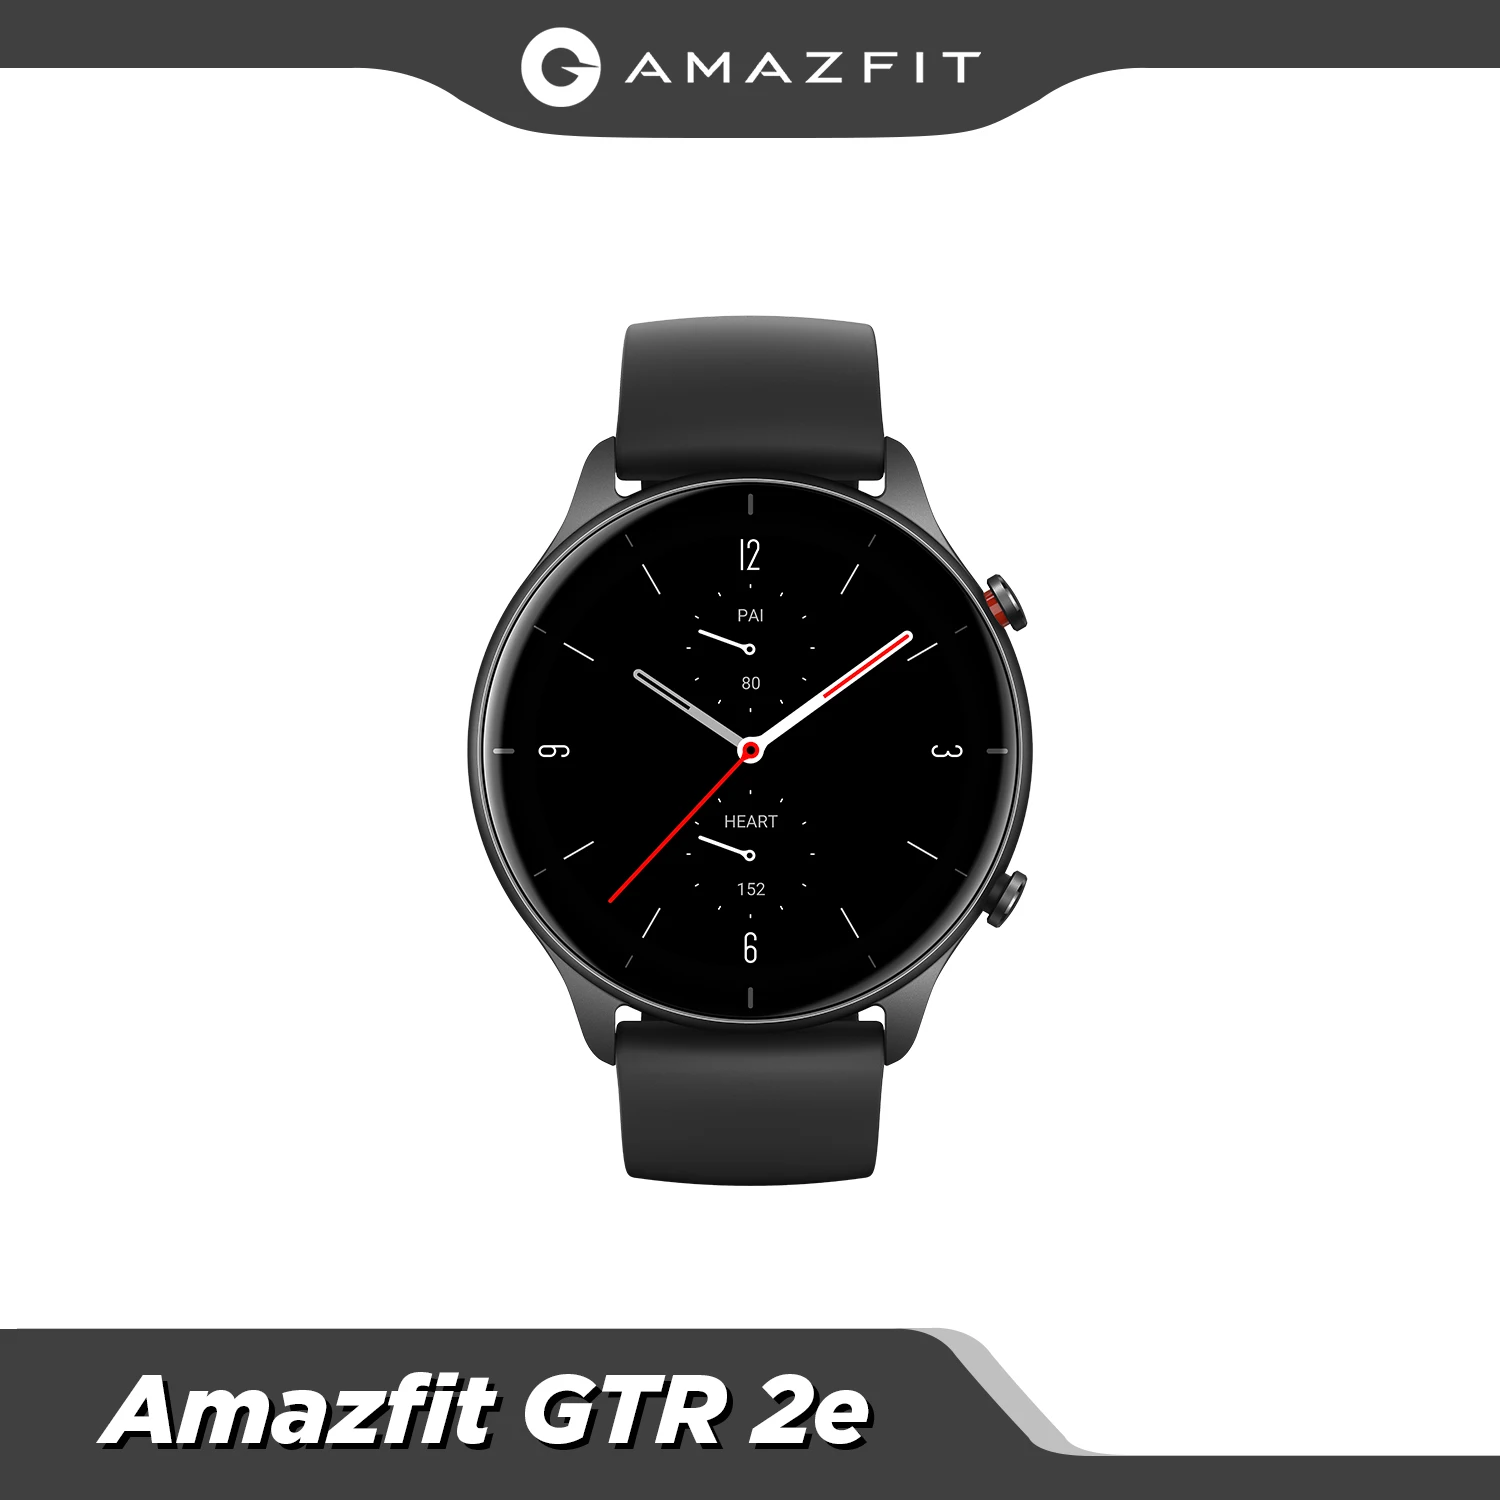   Amazfit GTR 2e Alexa Built-in Smartwatch 24 Days Battery Life 2.5 D Glass 5.0 Heart Rate Smart Watch 